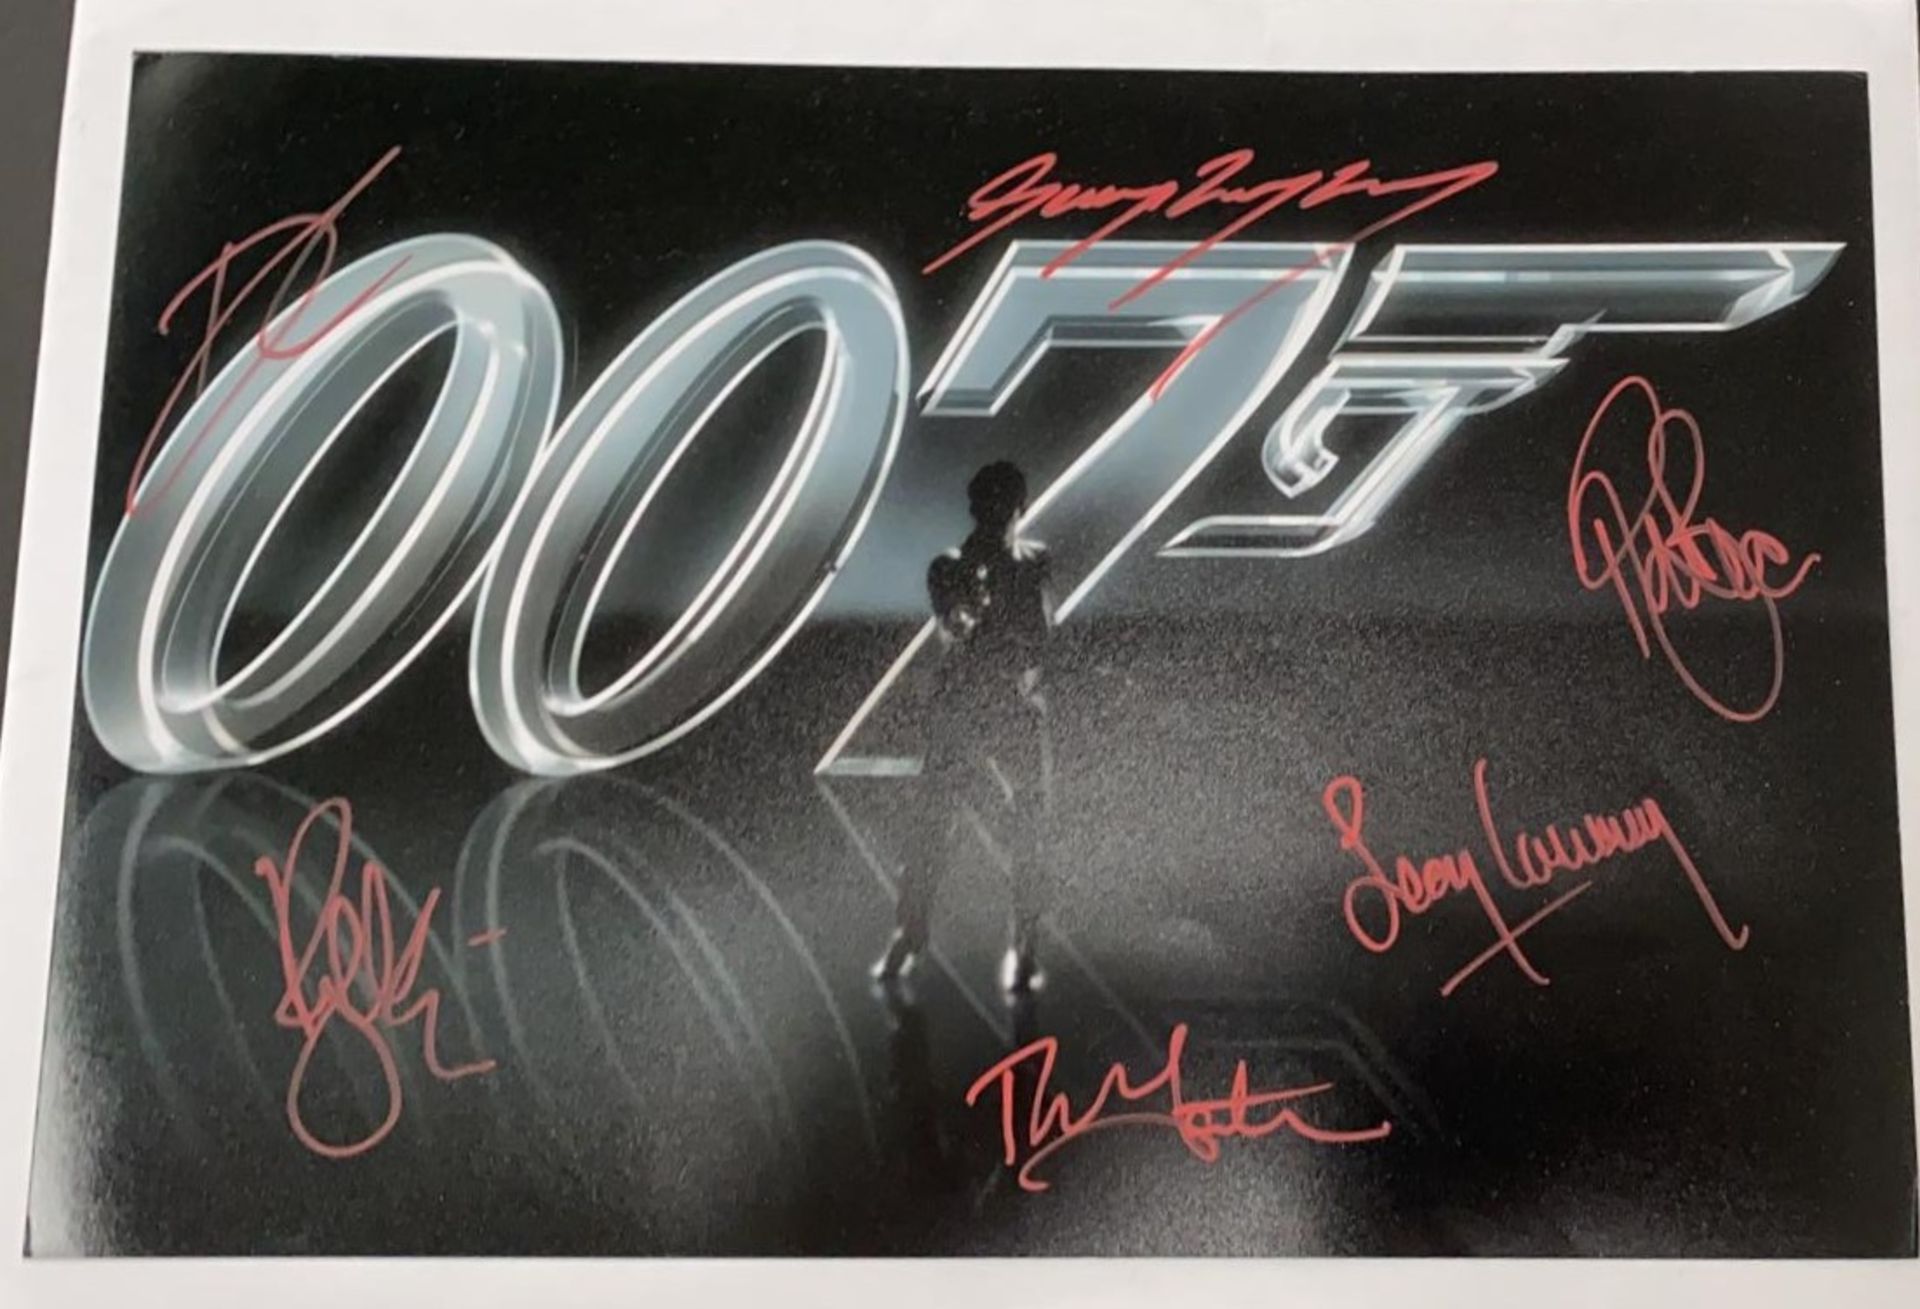 1 x Signed Autograph Picture - JAMES BOND 007 - Multi Cast James Bond Autographs By 6 James Bond - Image 2 of 5